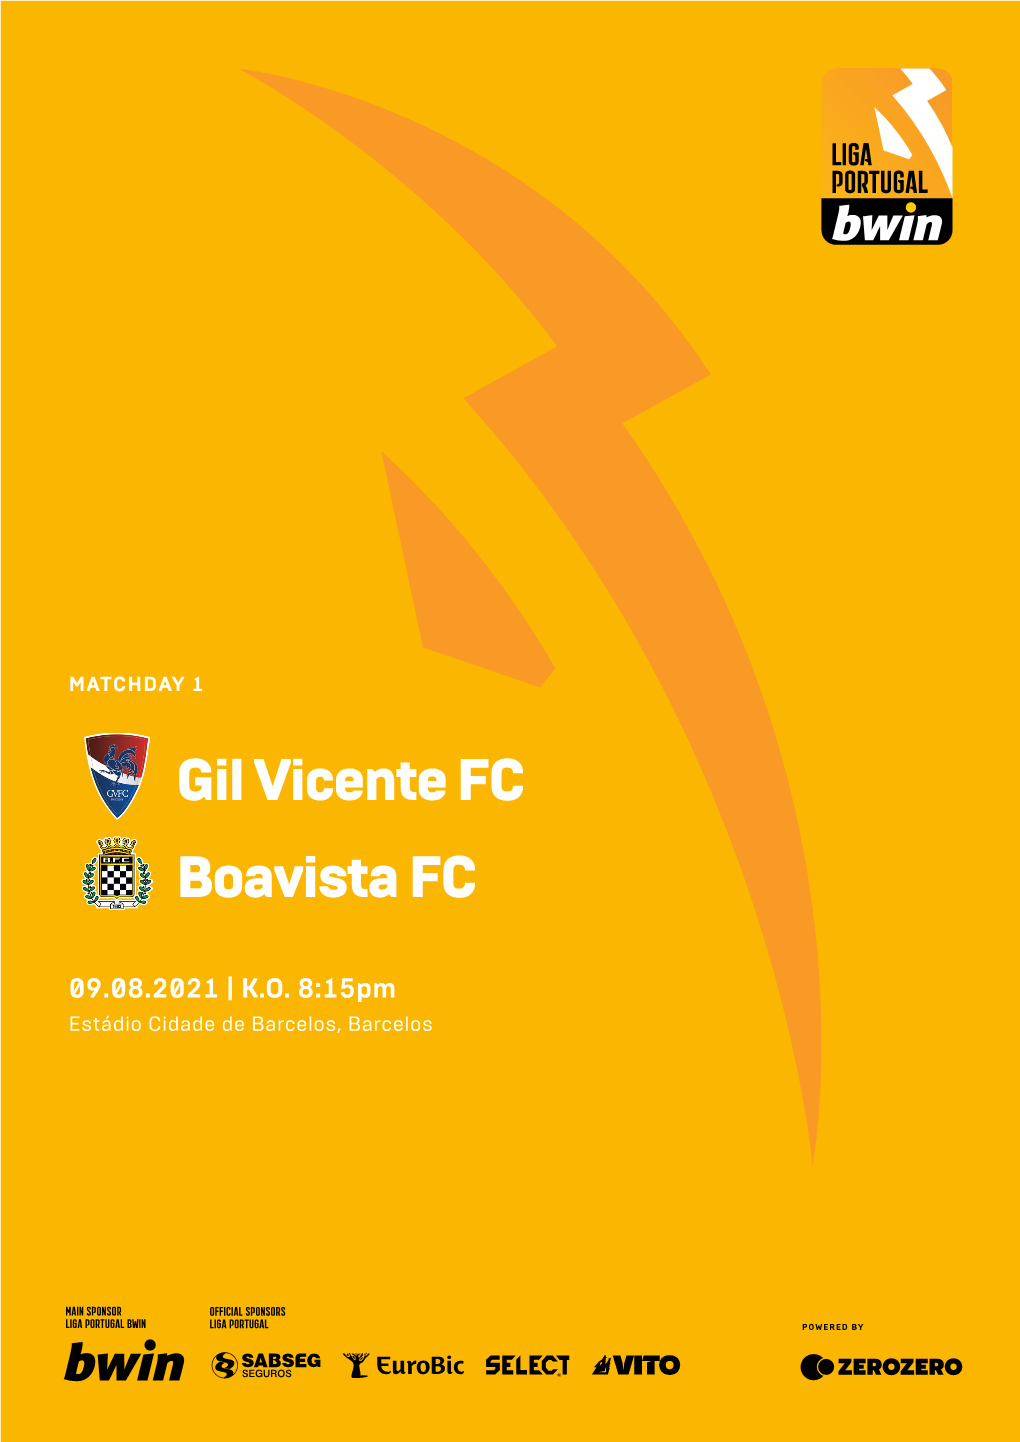 Gil Vicente FC Boavista FC